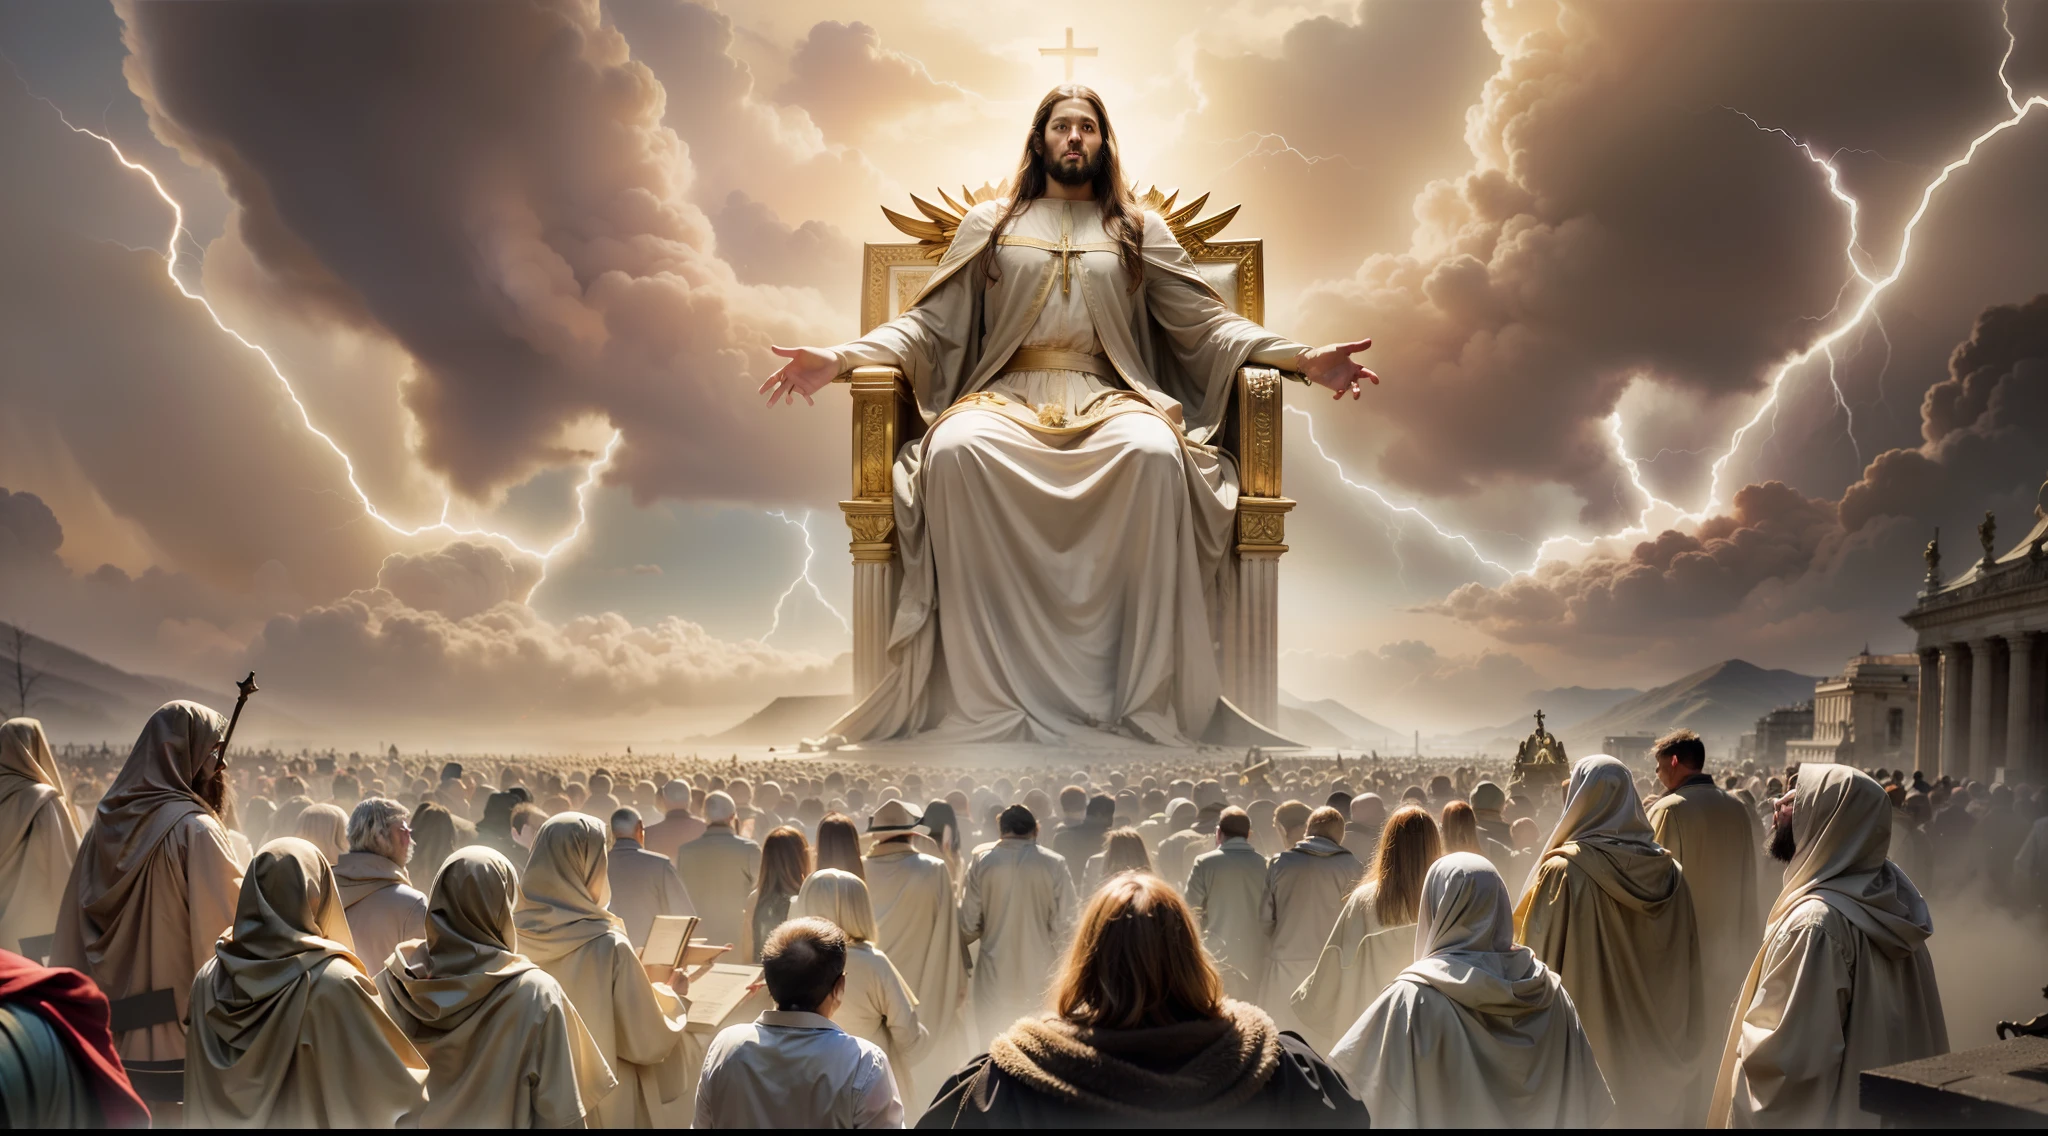 Потрясающее изображение, изображающее сценарий Судного дня., как описано в Откровении 20:11. Белый трон, на котором сидит Иисус, выделяется в центре сцены., окружен белыми облаками и молниями, символизирующий божественное величие. Присутствуют могущественные ангелы, торжественно наблюдая за открытием книг, представляющие записи действий каждого человека. несметная толпа людей, ожидая своей вечной судьбы. Настроение - это благоговение и благоговение перед божественной справедливостью, которая будет установлена.